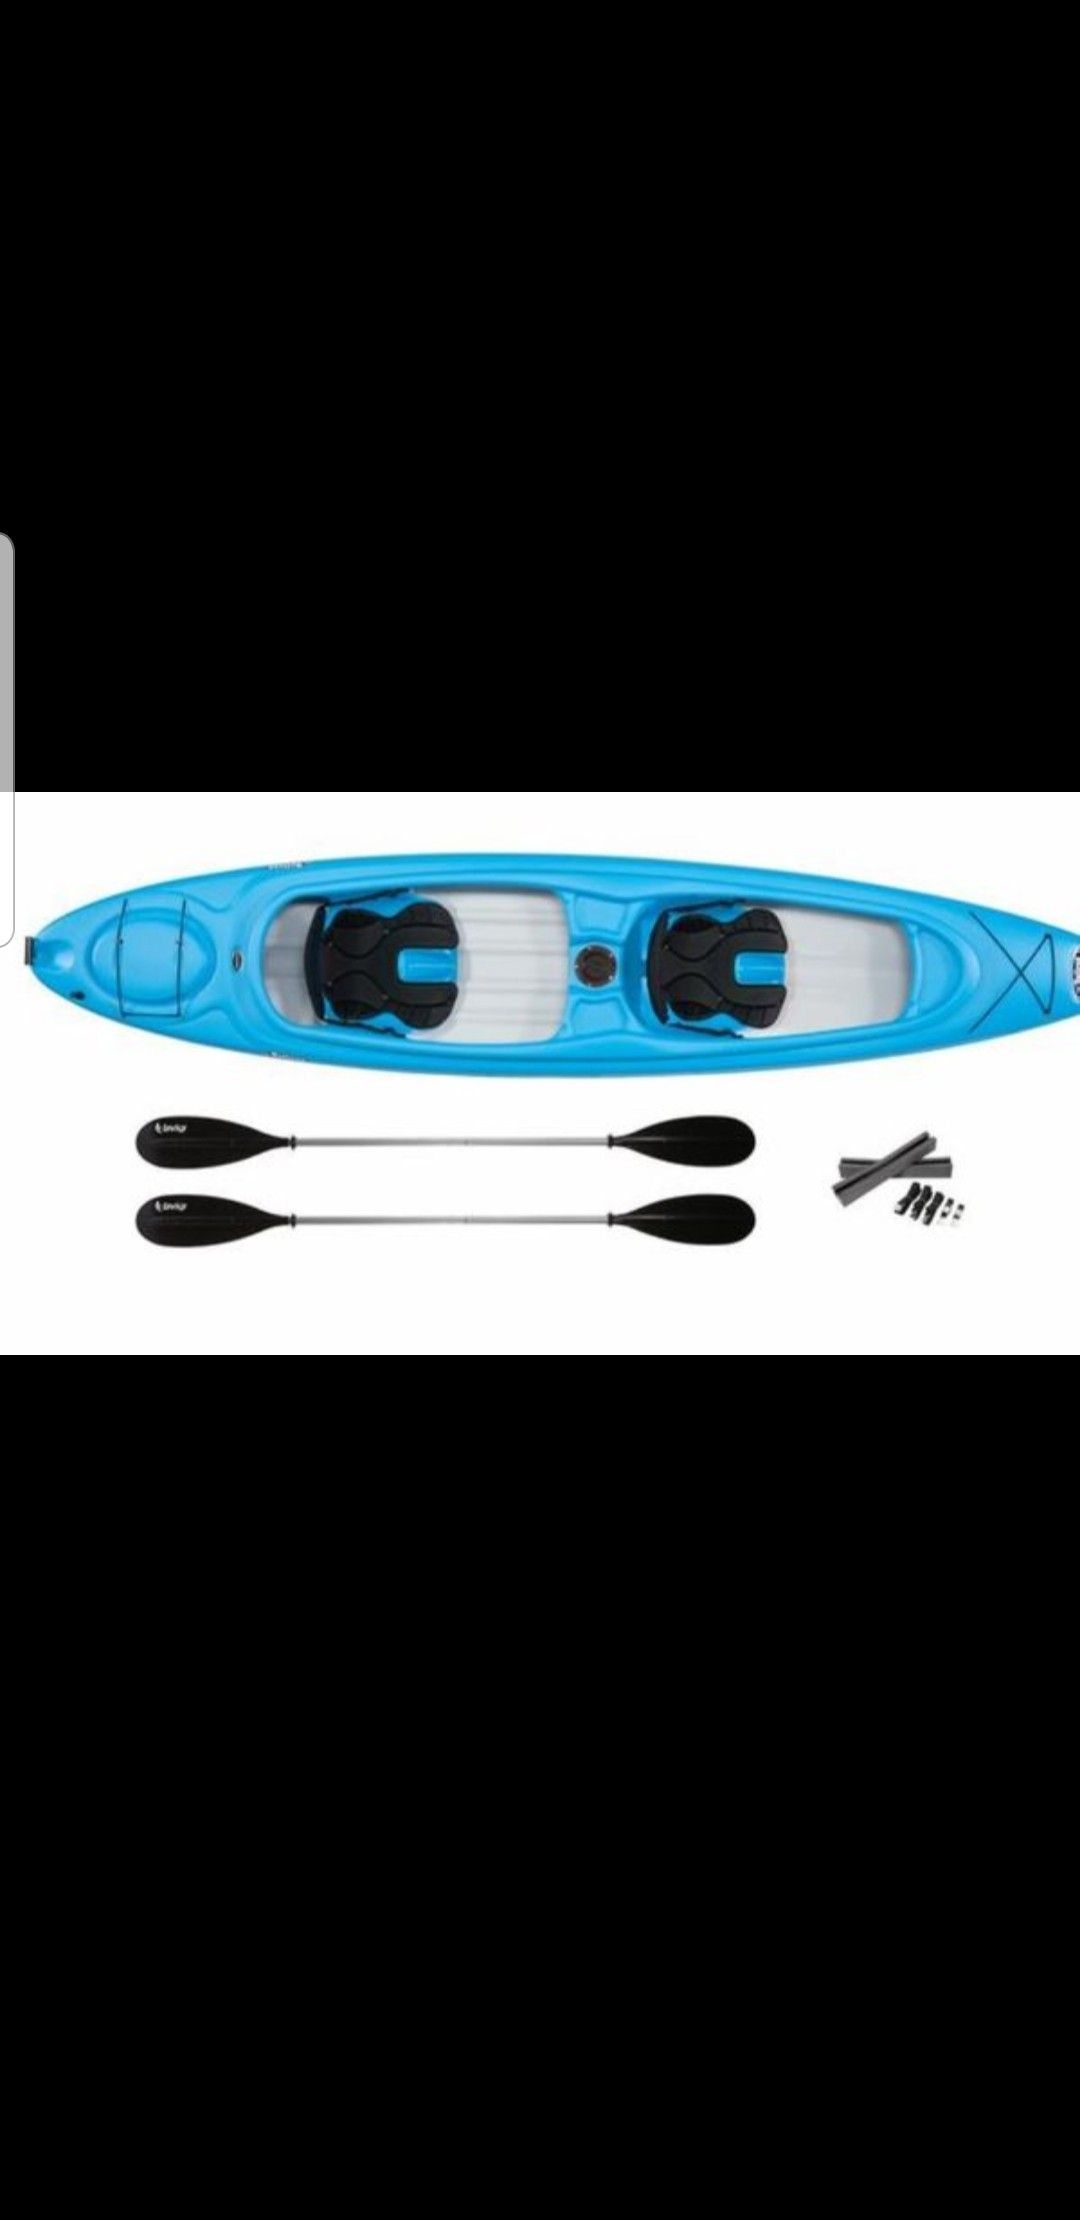 Kayak 2 people plastic kayak